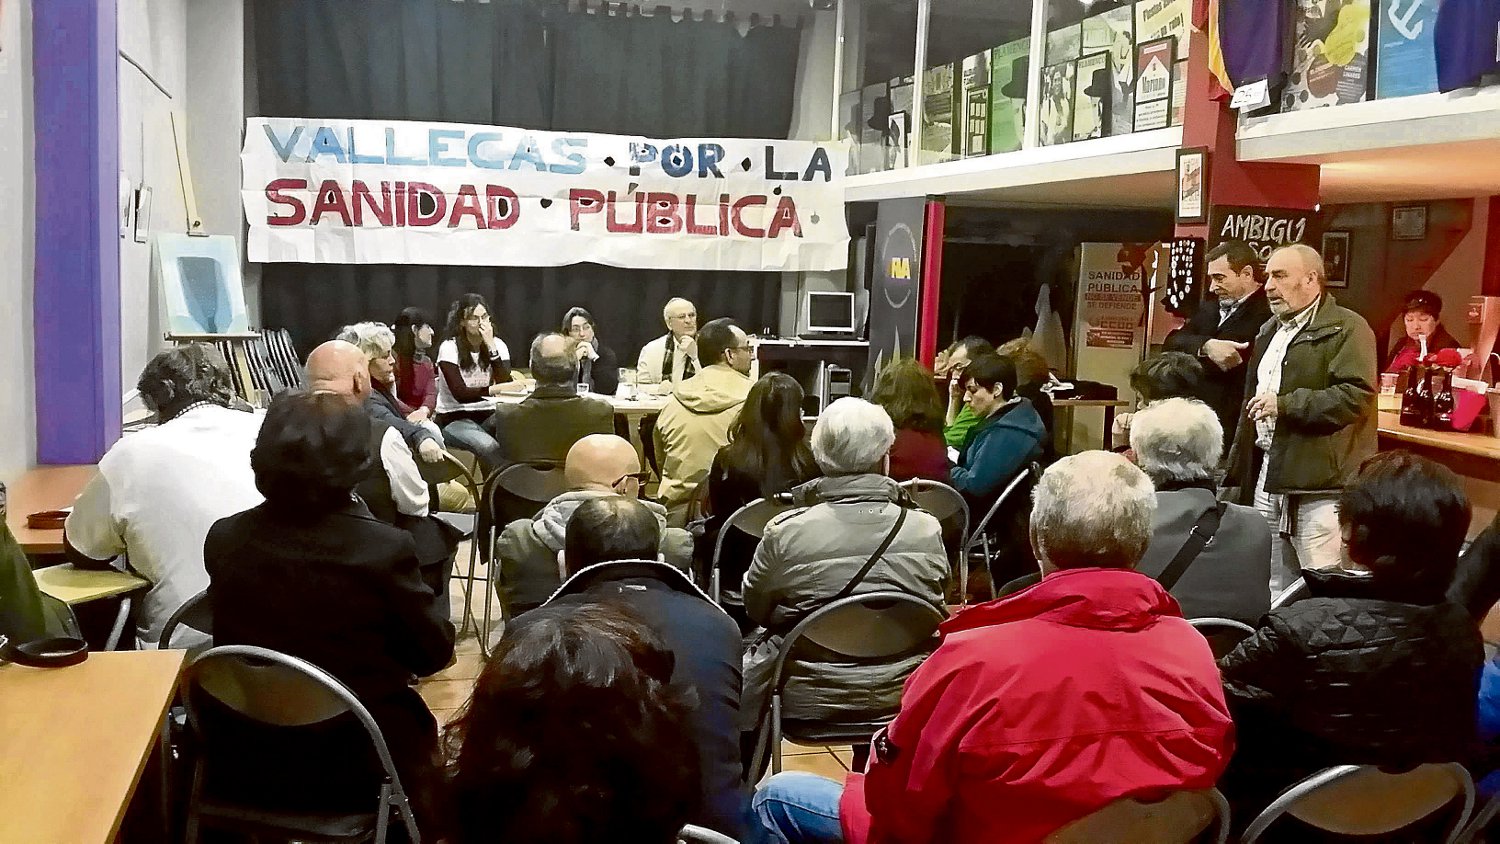 El manifiesto fue presentado el 26 de marzo en el Ateneo Republicano de Vallecas.